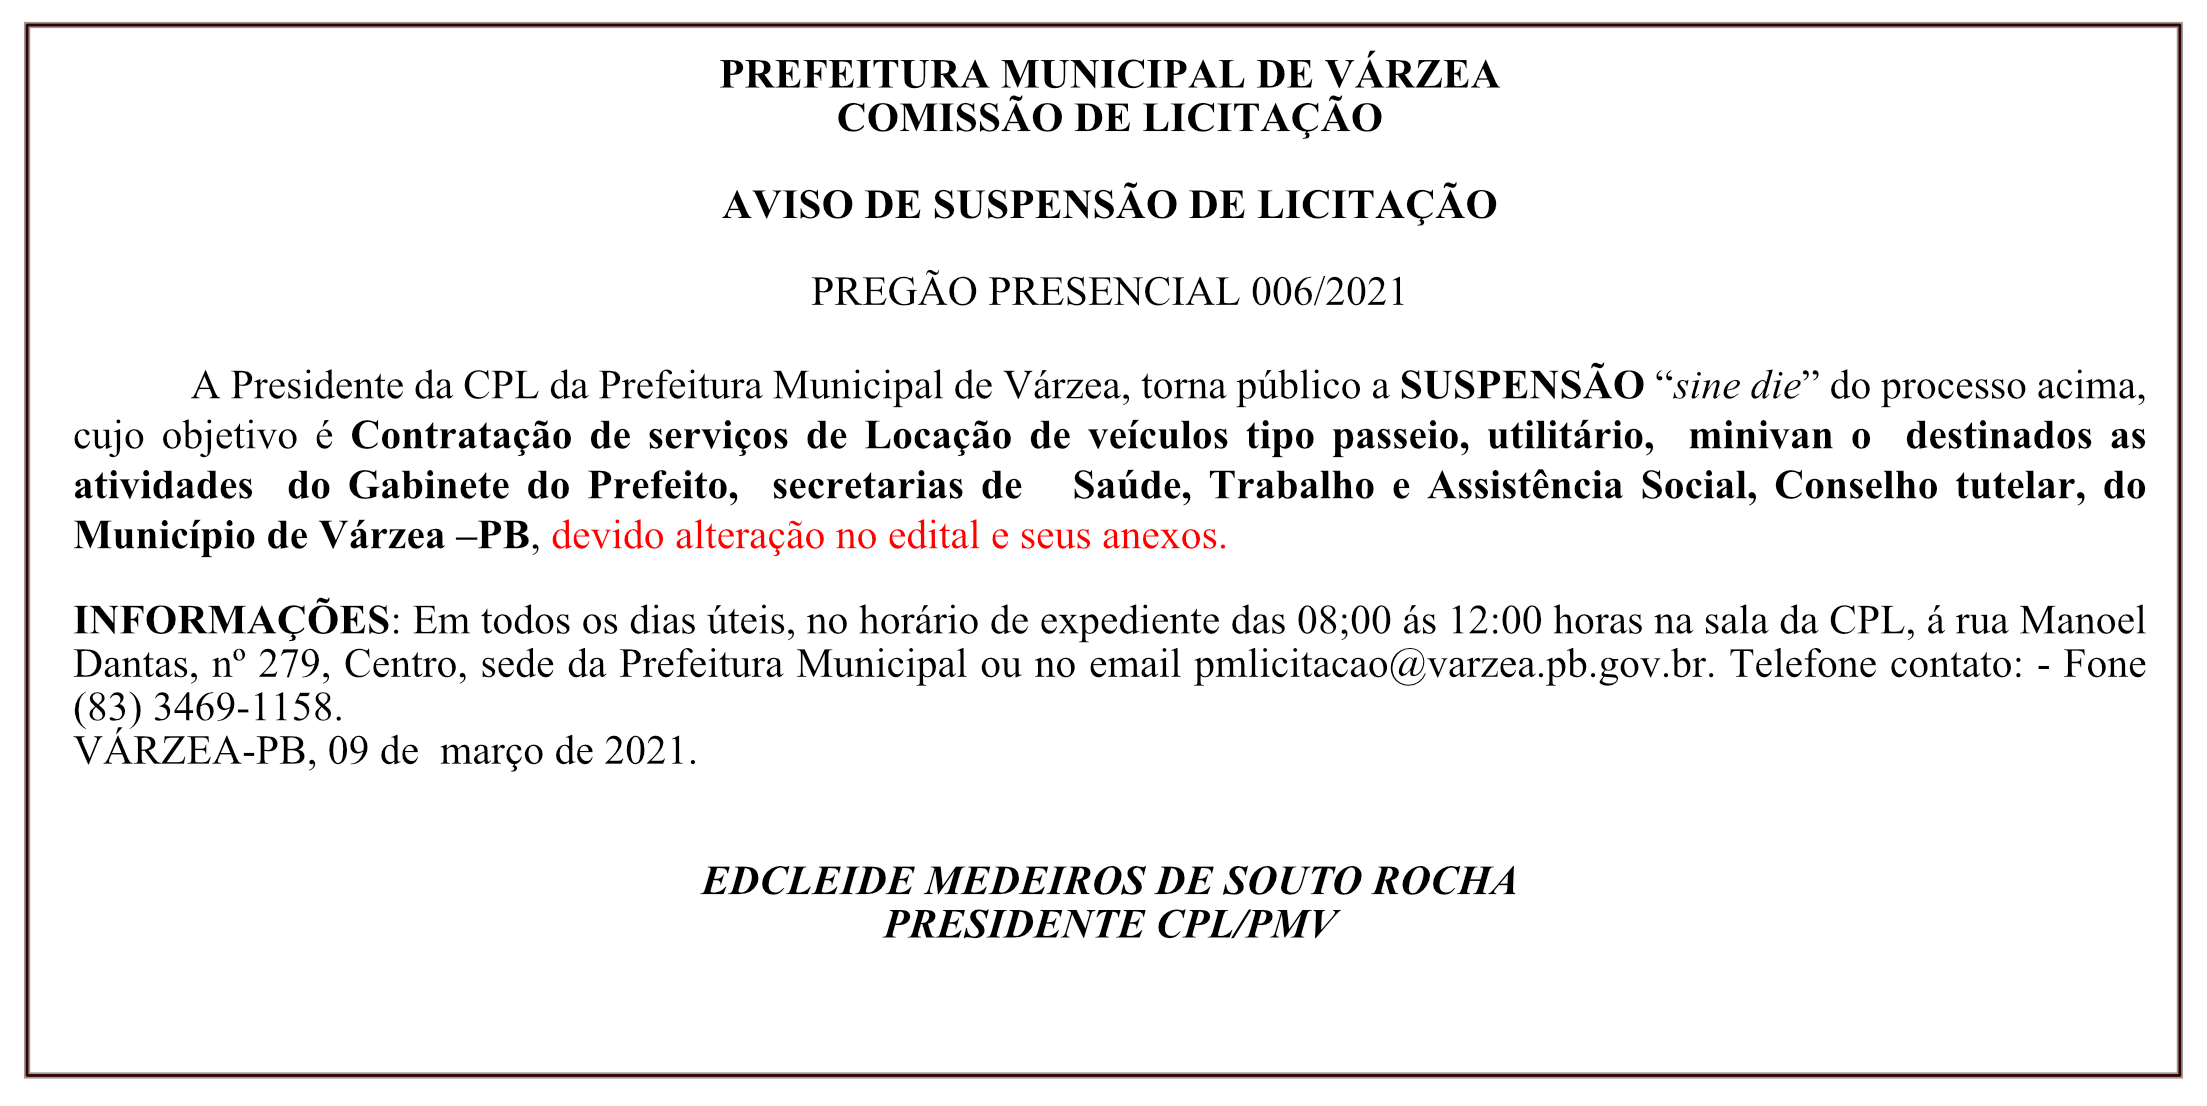 PREFEITURA MUNICIPAL DE VÁRZEA – COMISSÃO DE LICITAÇÃO – AVISO DE SUSPENSÃO DE LICITAÇÃO – PREGÃO PRESENCIAL 006/2021